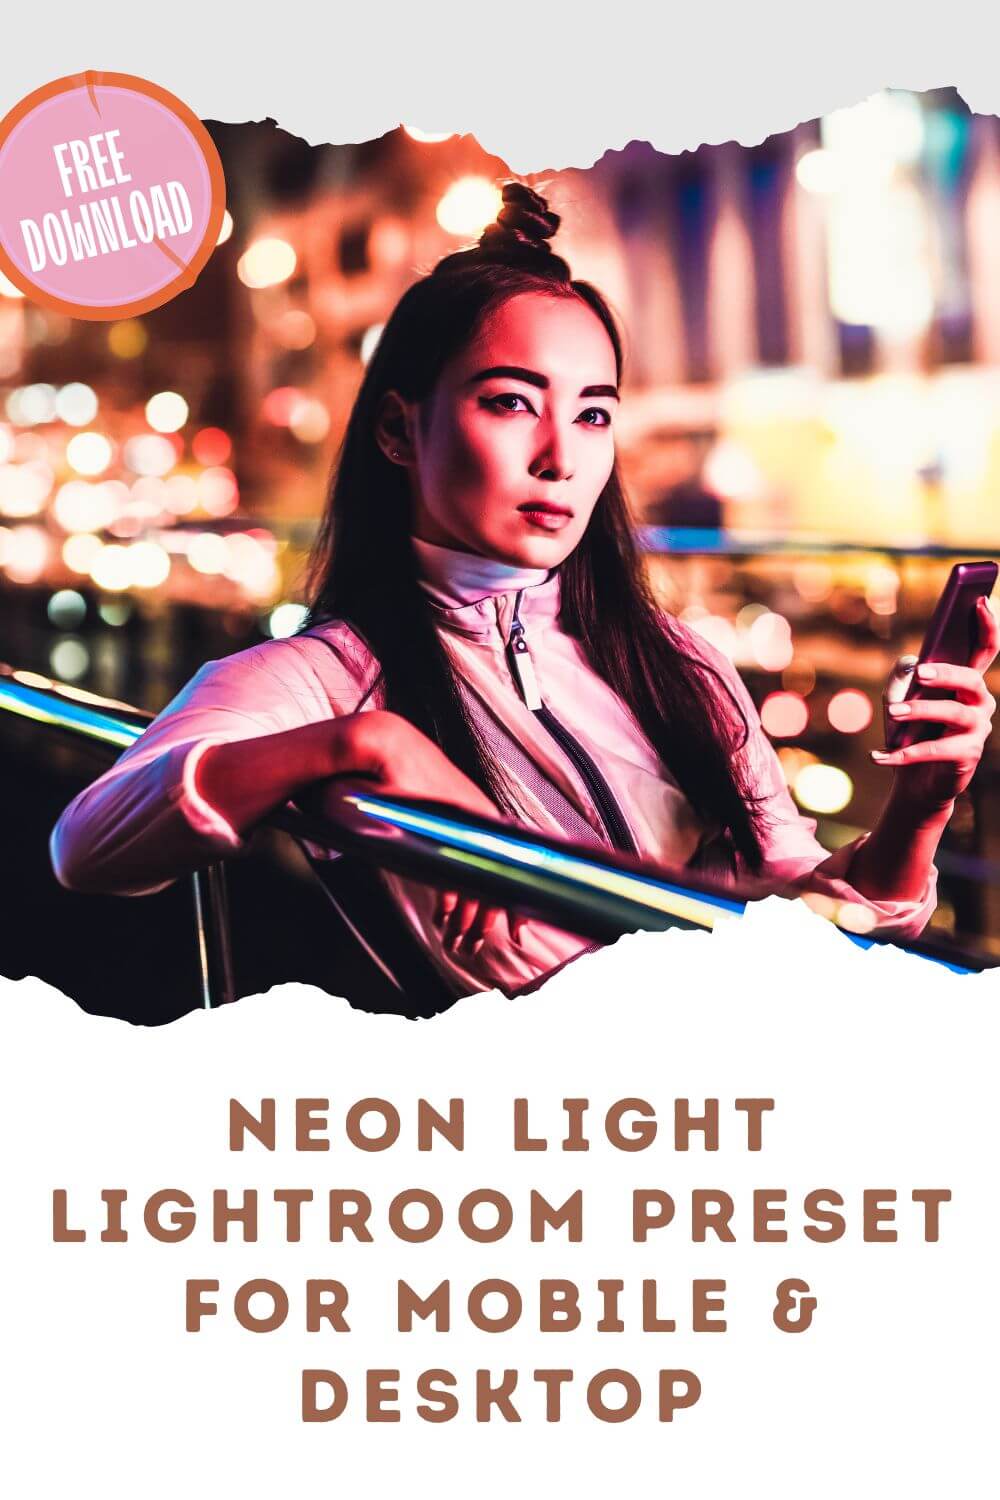 Neon Light Lightroom Preset For Mobile & Desktop Pinterest